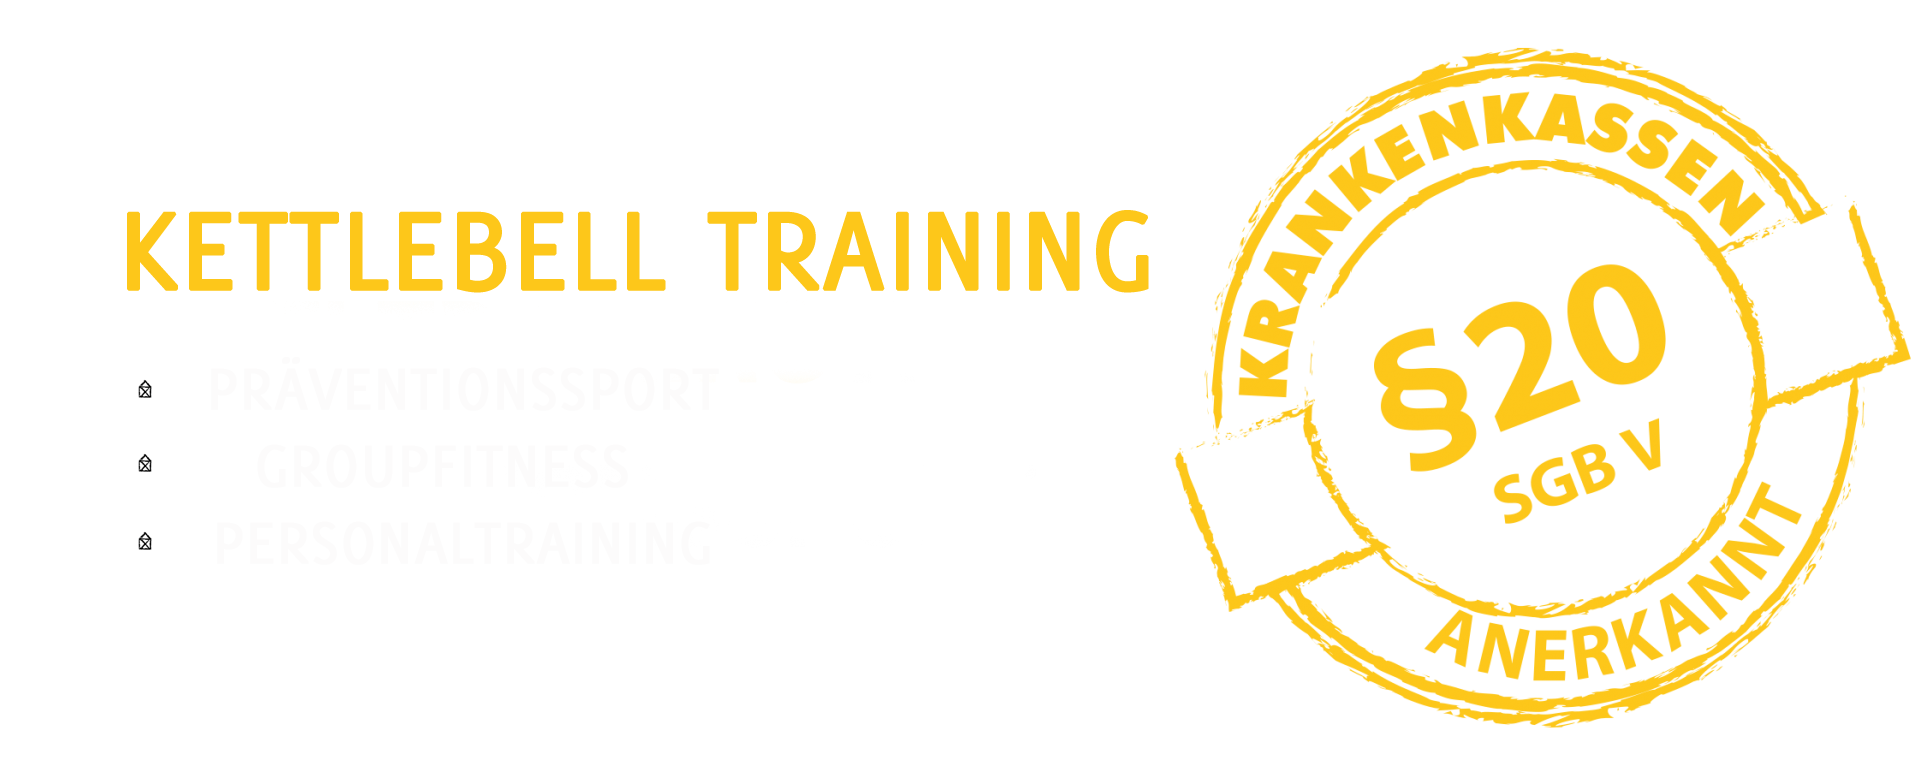 Kettlebell Training als Präventionssport, Groupfitness, Personaltraining